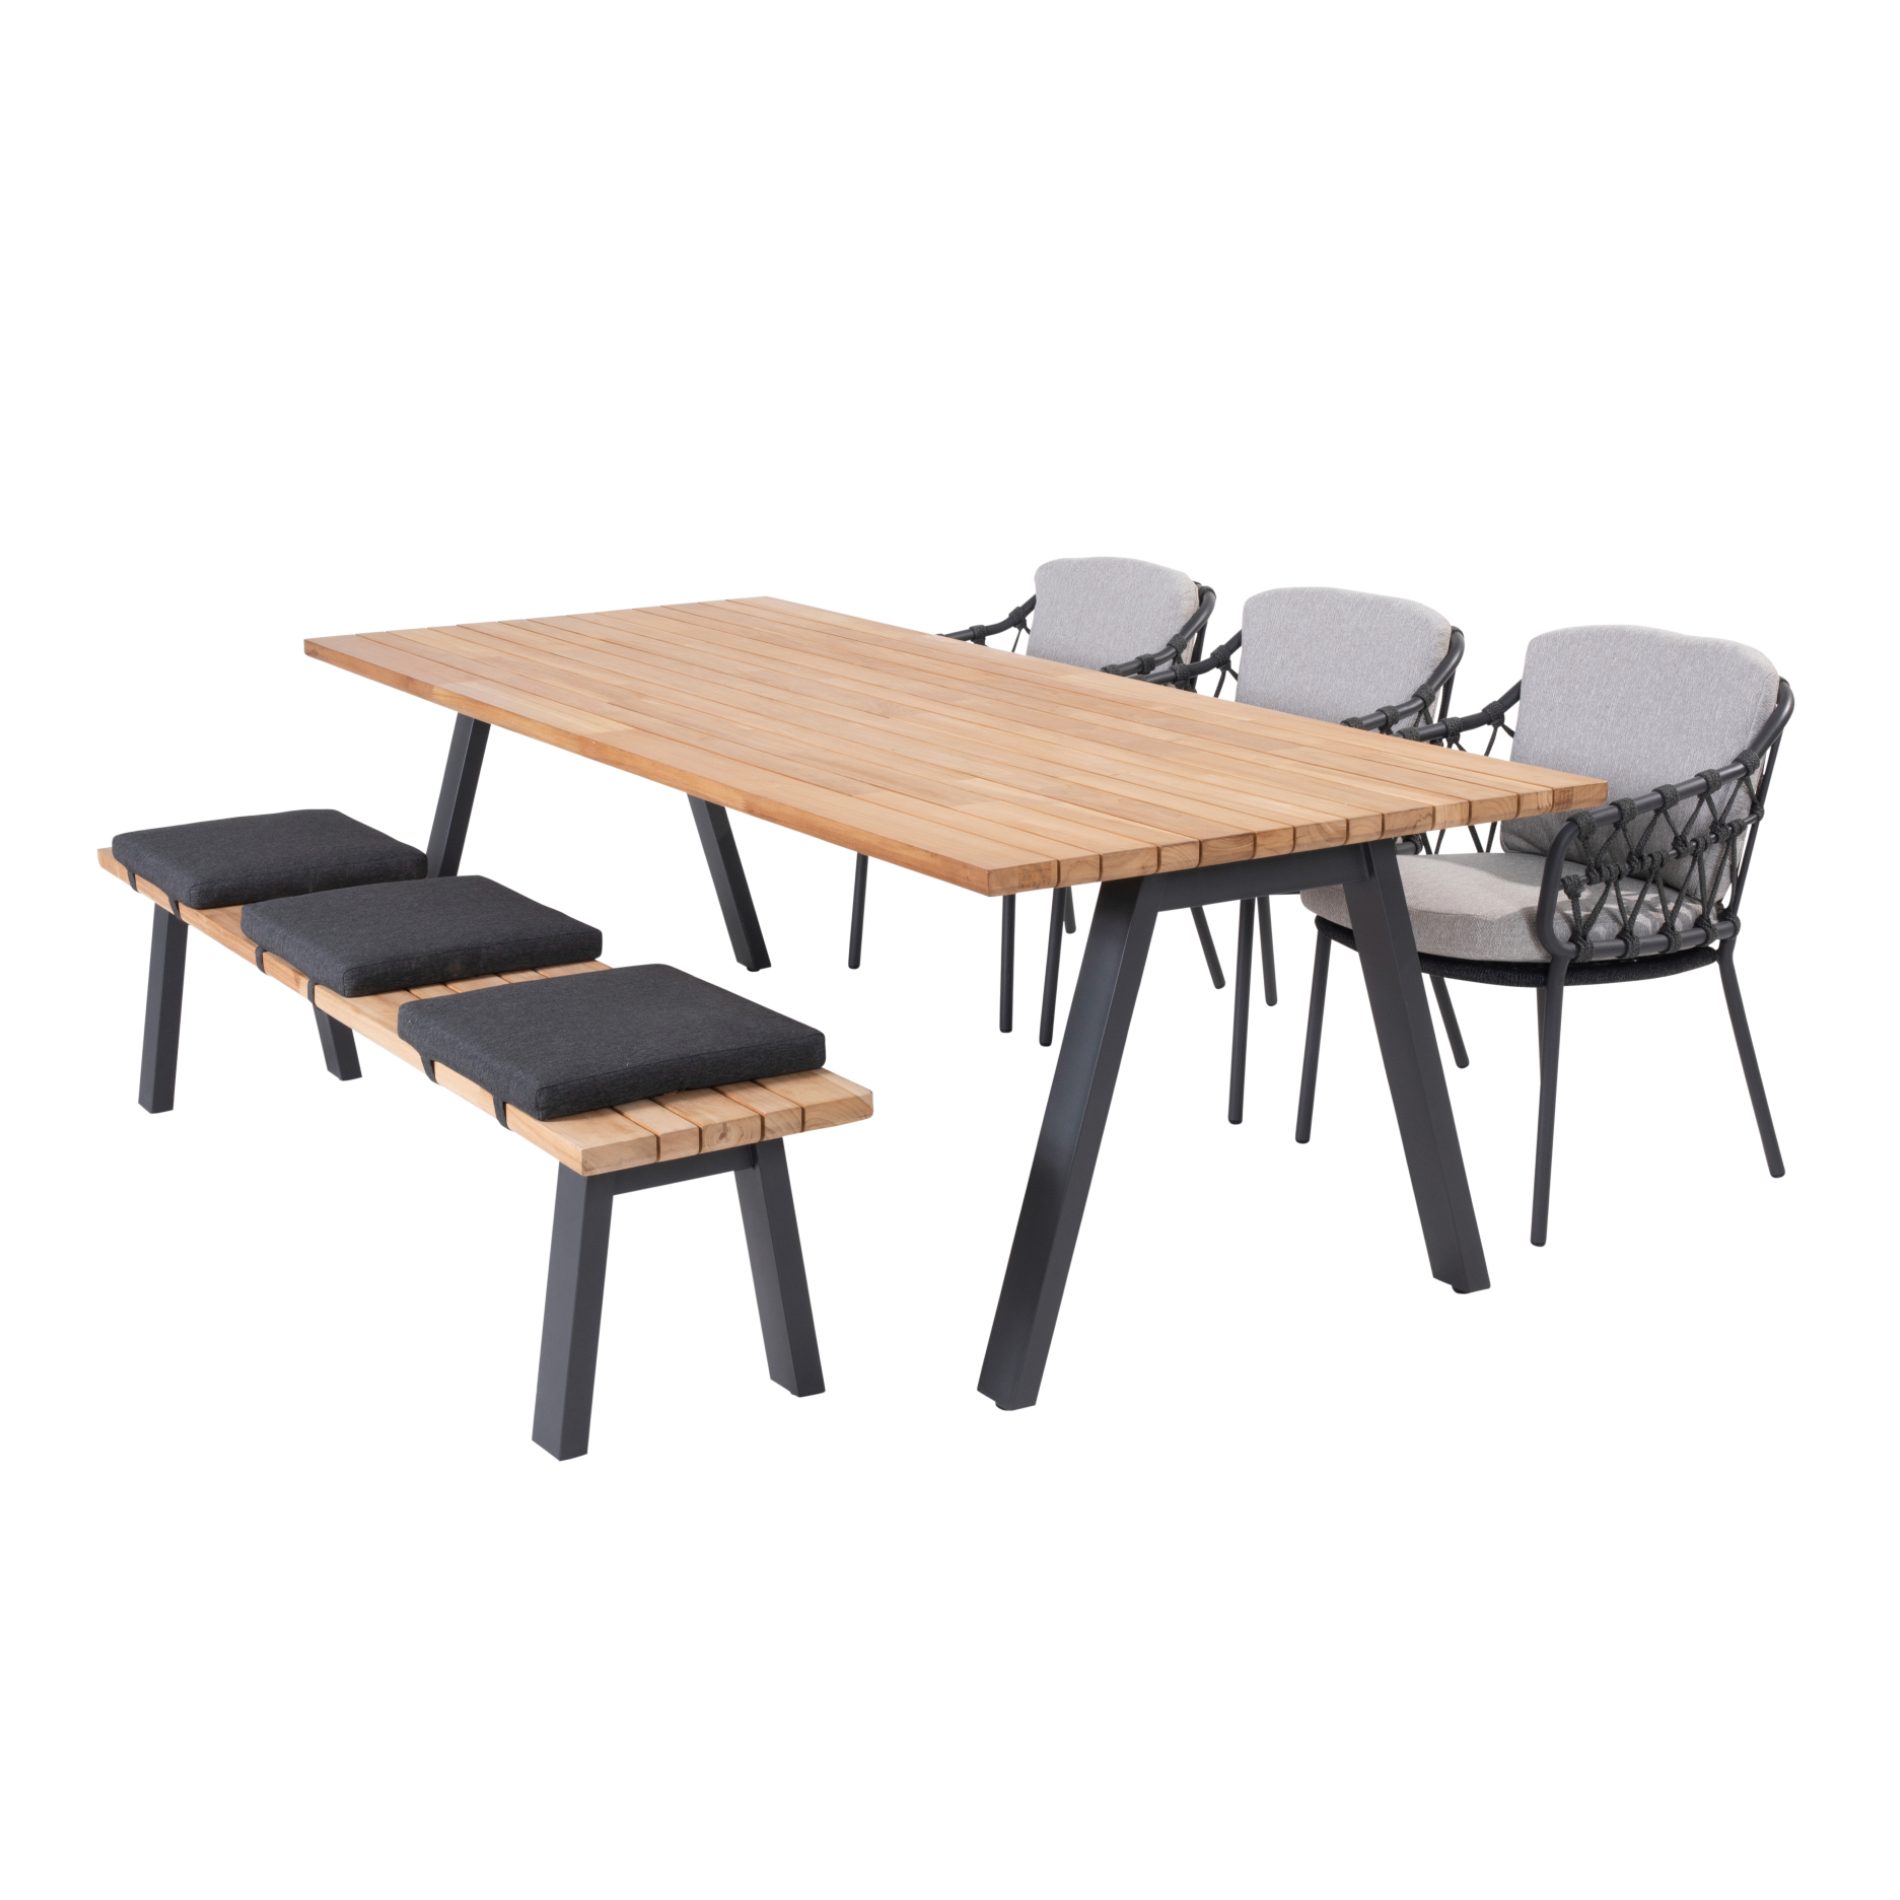 4Seasons Outdoor Gartenmöbel-Set mit 3x Ambassador Calpi, Diningsessel und Tisch Sitzbank